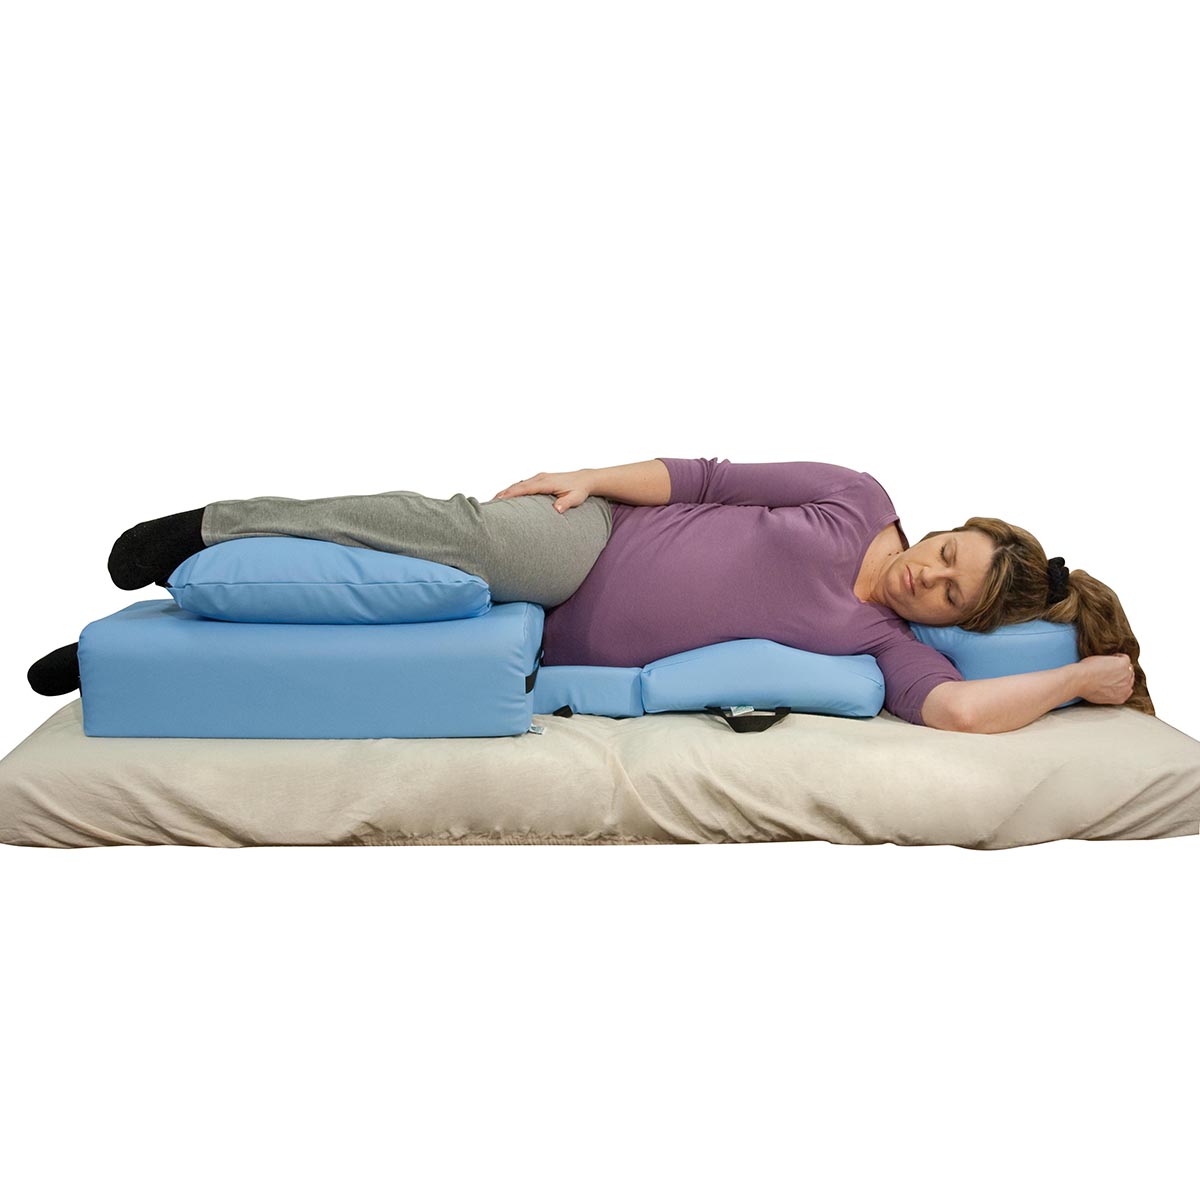 the good sleep expert bolster pillow